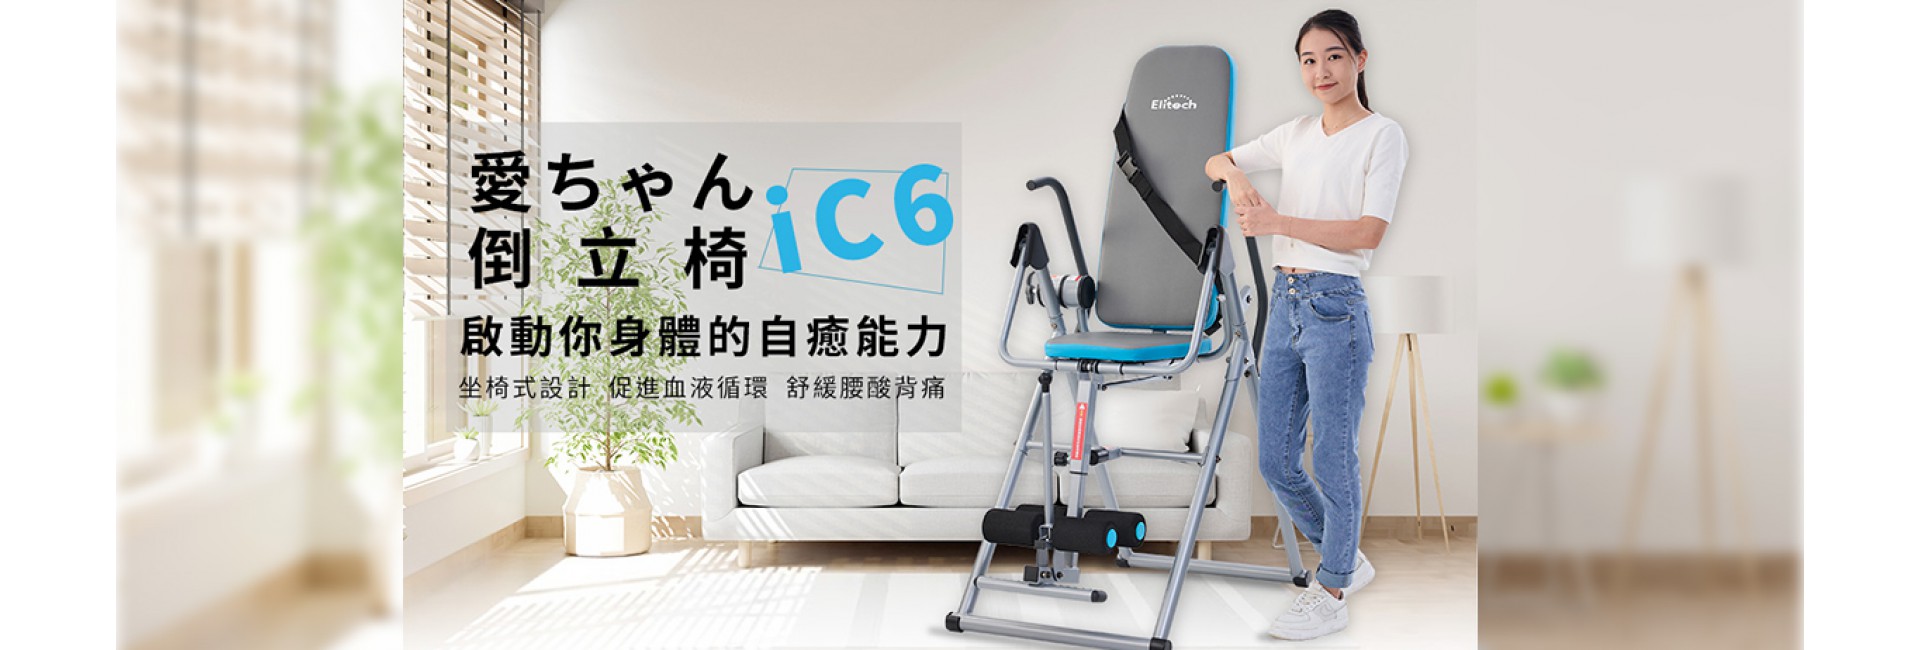 愛ちゃん倒立椅 ic-6 